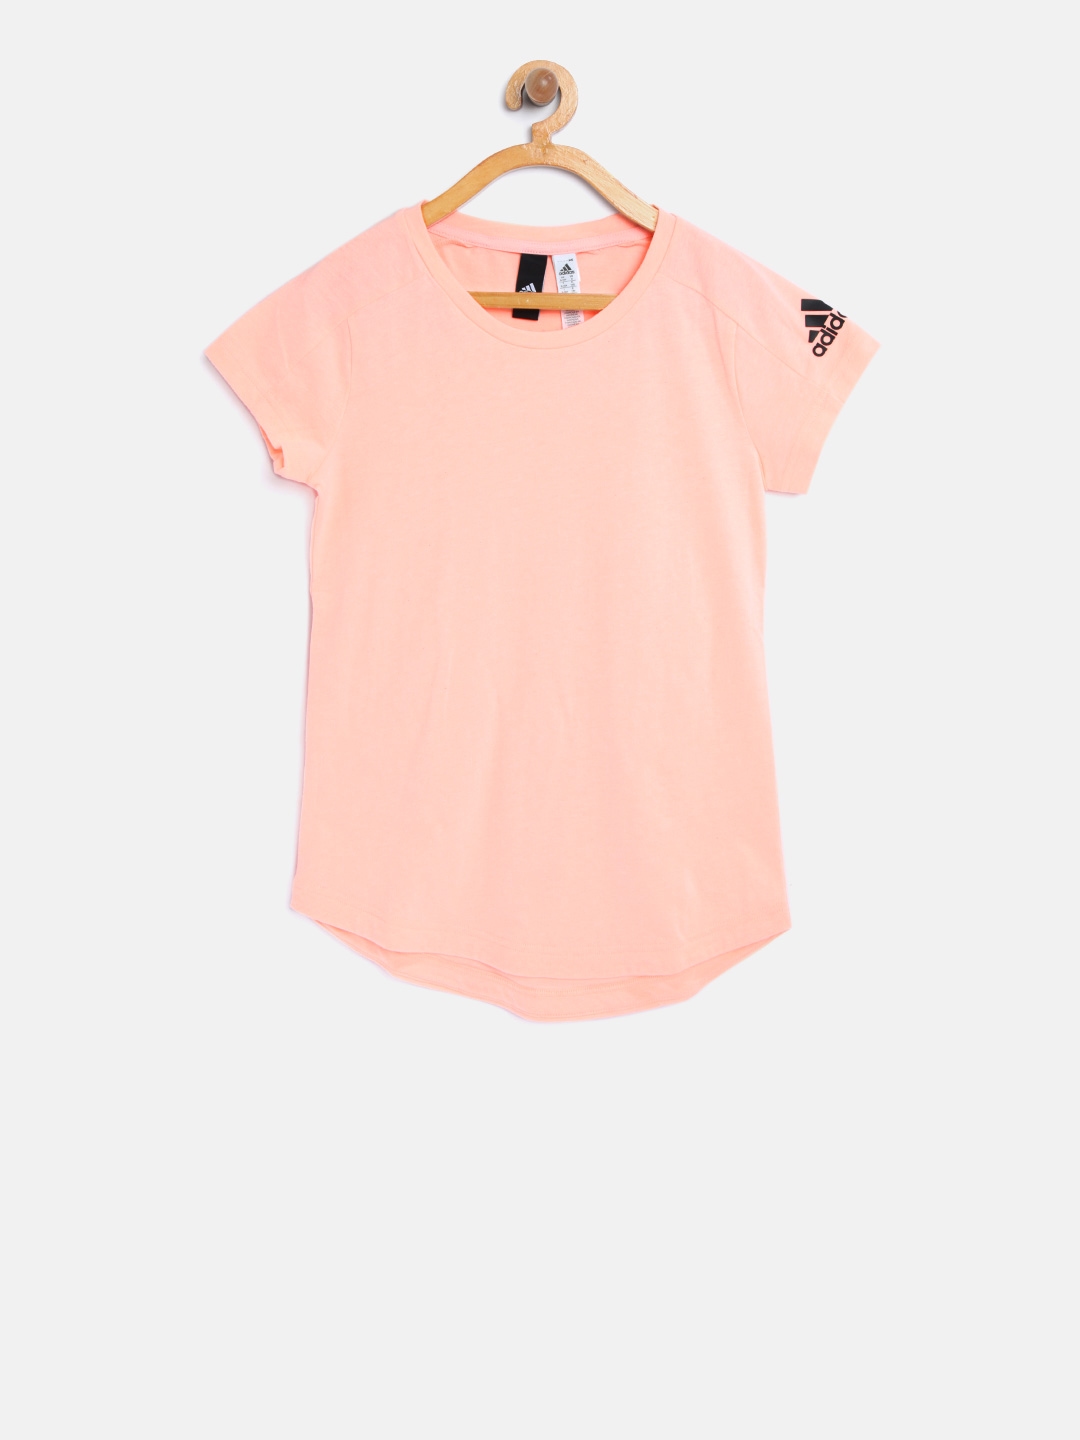 peach adidas shirt